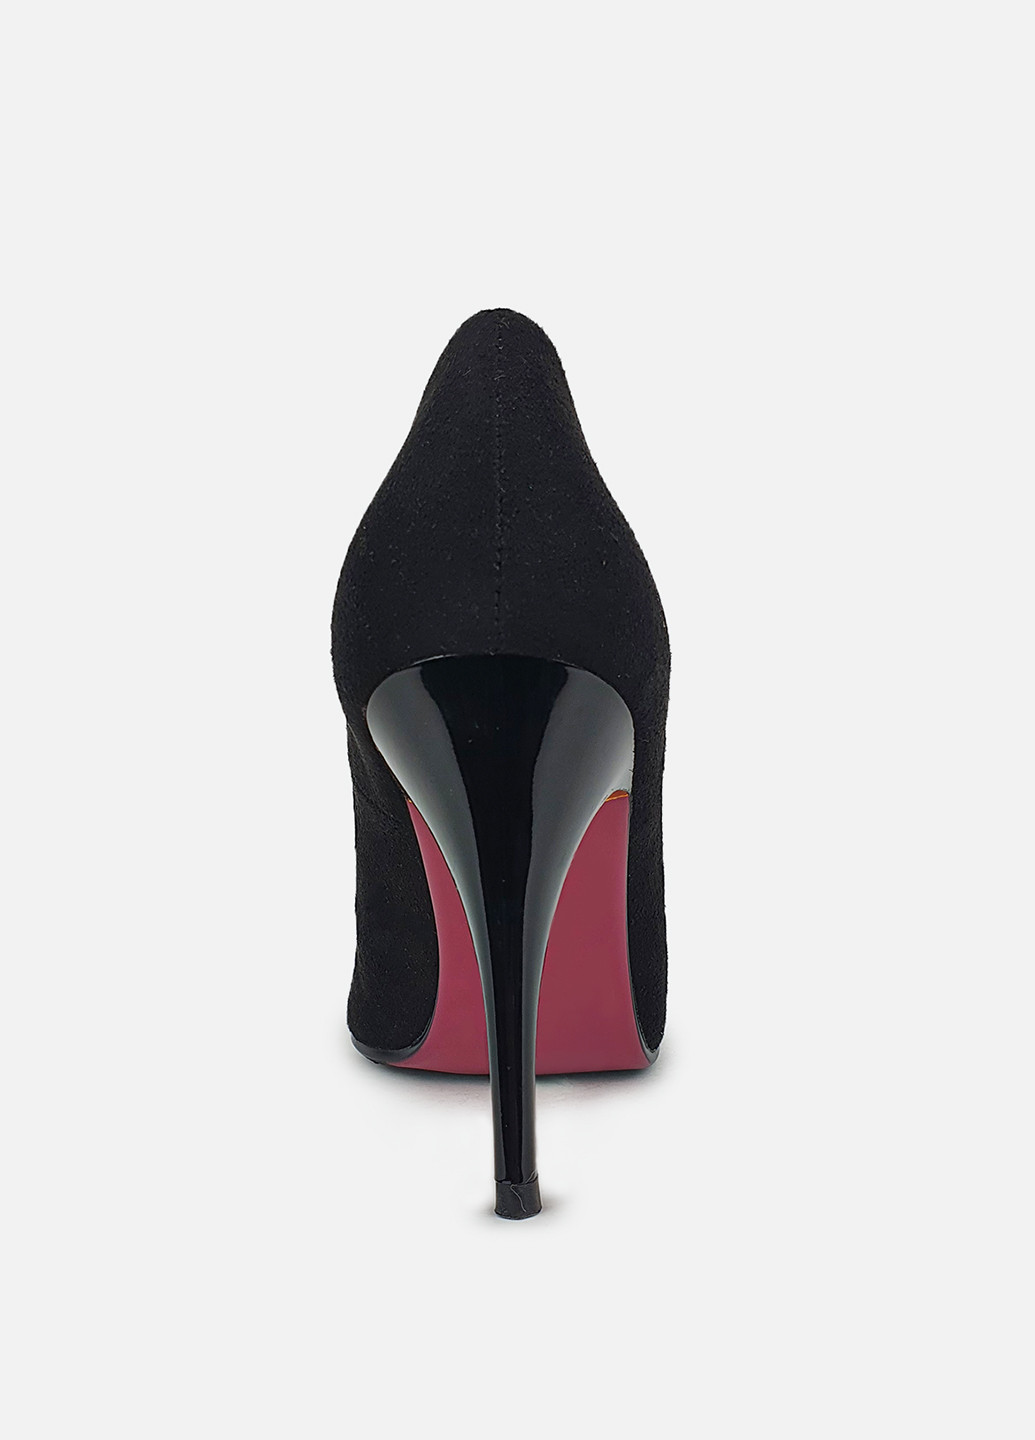 Черные женские туфли на высоком каблуке кожаные Toleeao